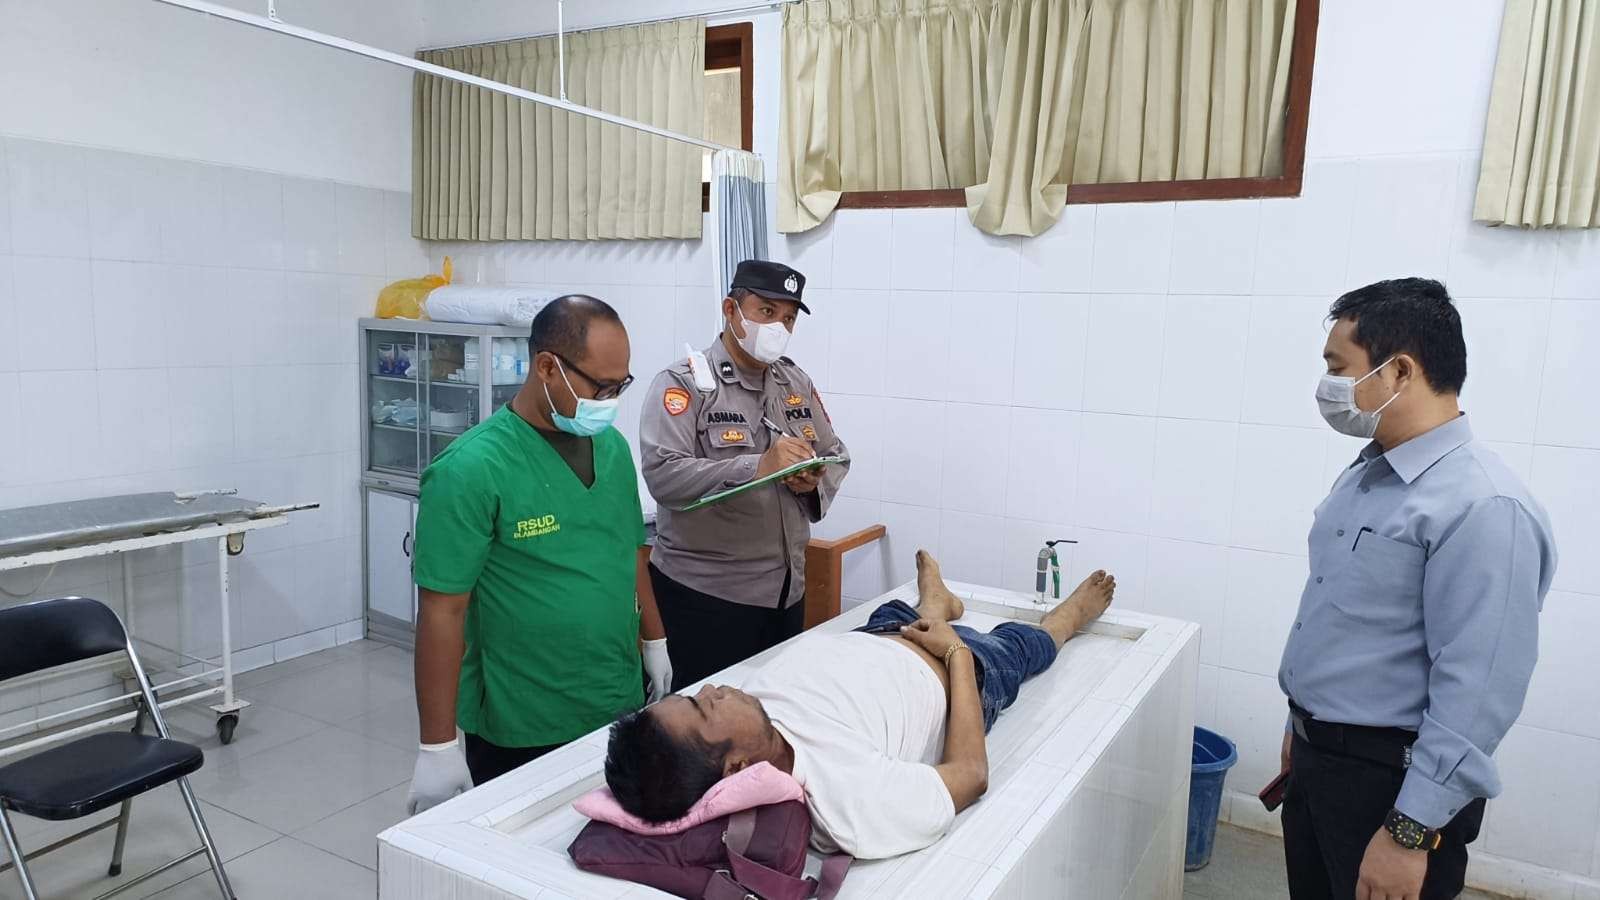 Jenazah korban dibawa ke kamar Jenazah RSUD Blambangan. (Foto: Istimewa)